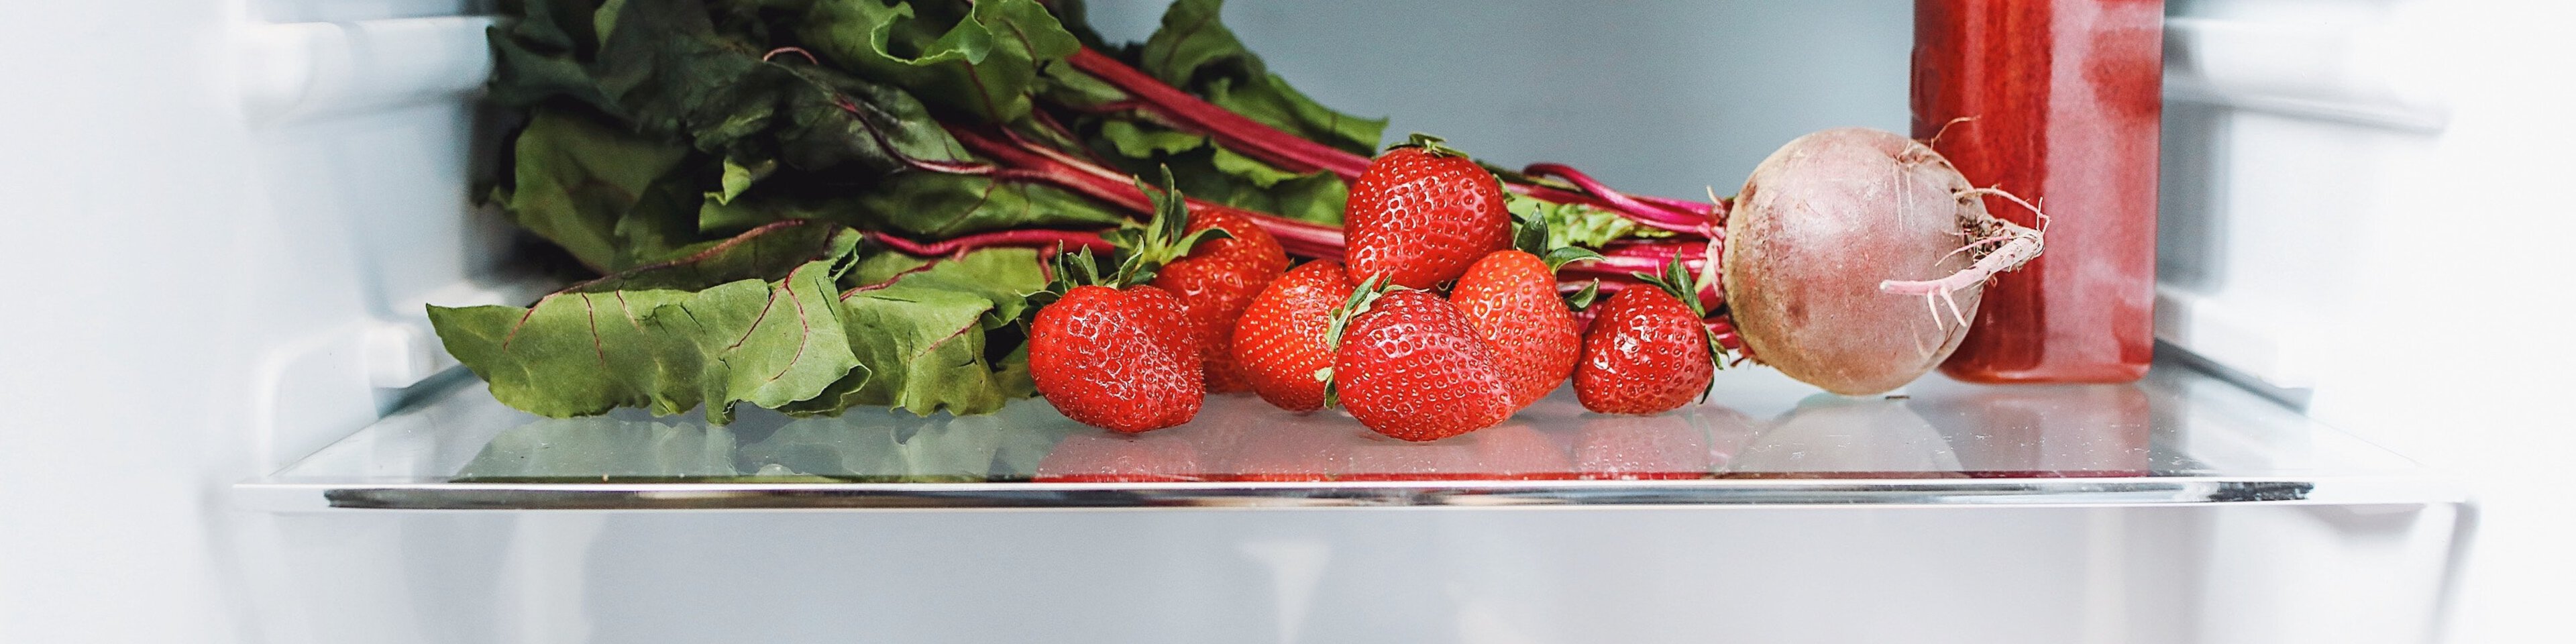 Kühlschrank mit Lebensmitteln | © Pexels | polina tankilevitch